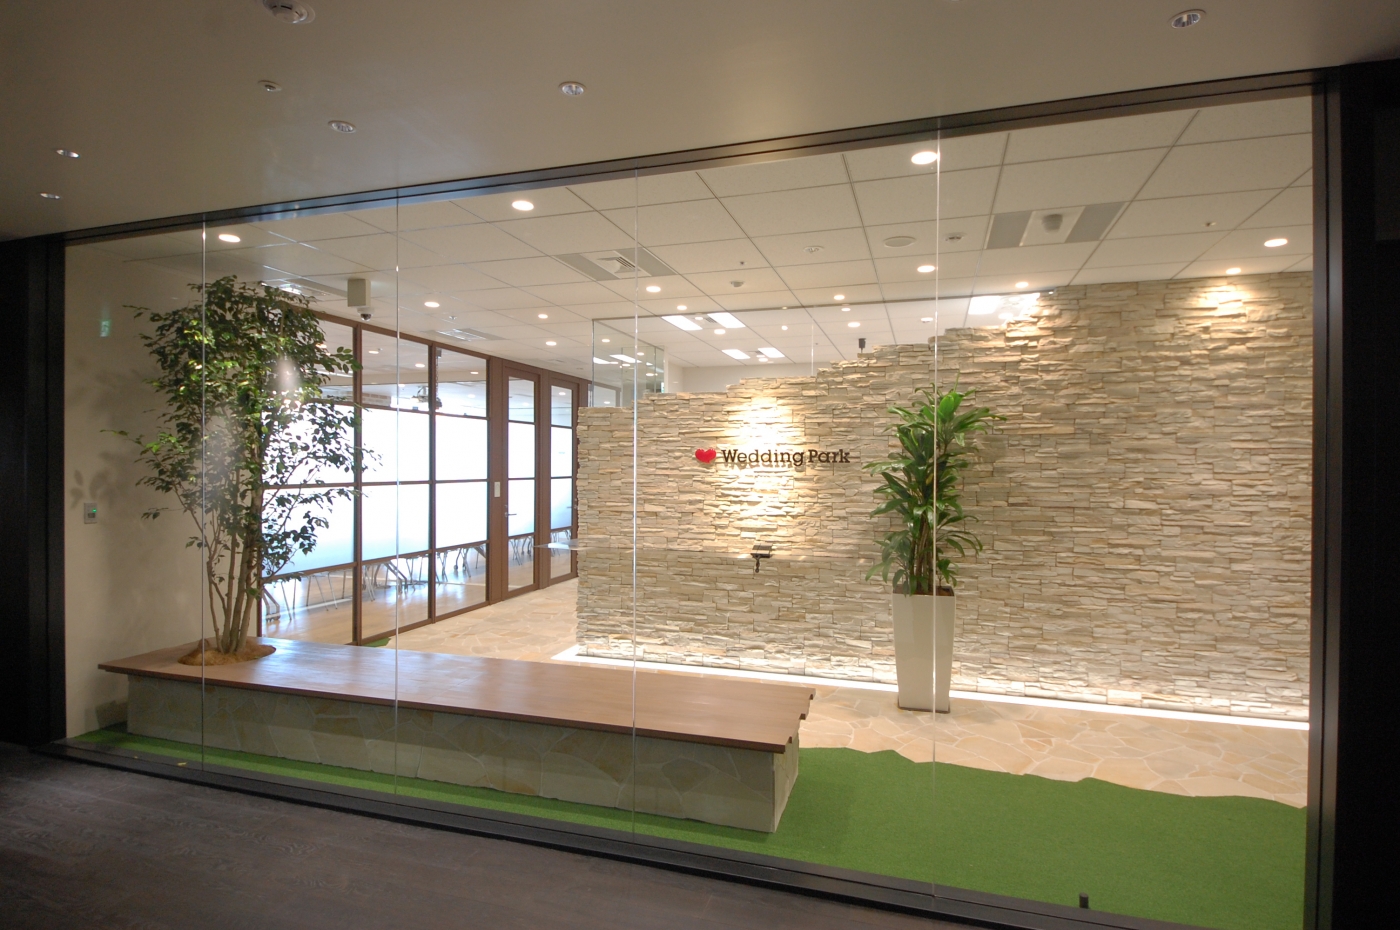 オフィスデザイン実績～石畳と木目の温かな雰囲気に包まれた南仏プロヴァンス風オフィス